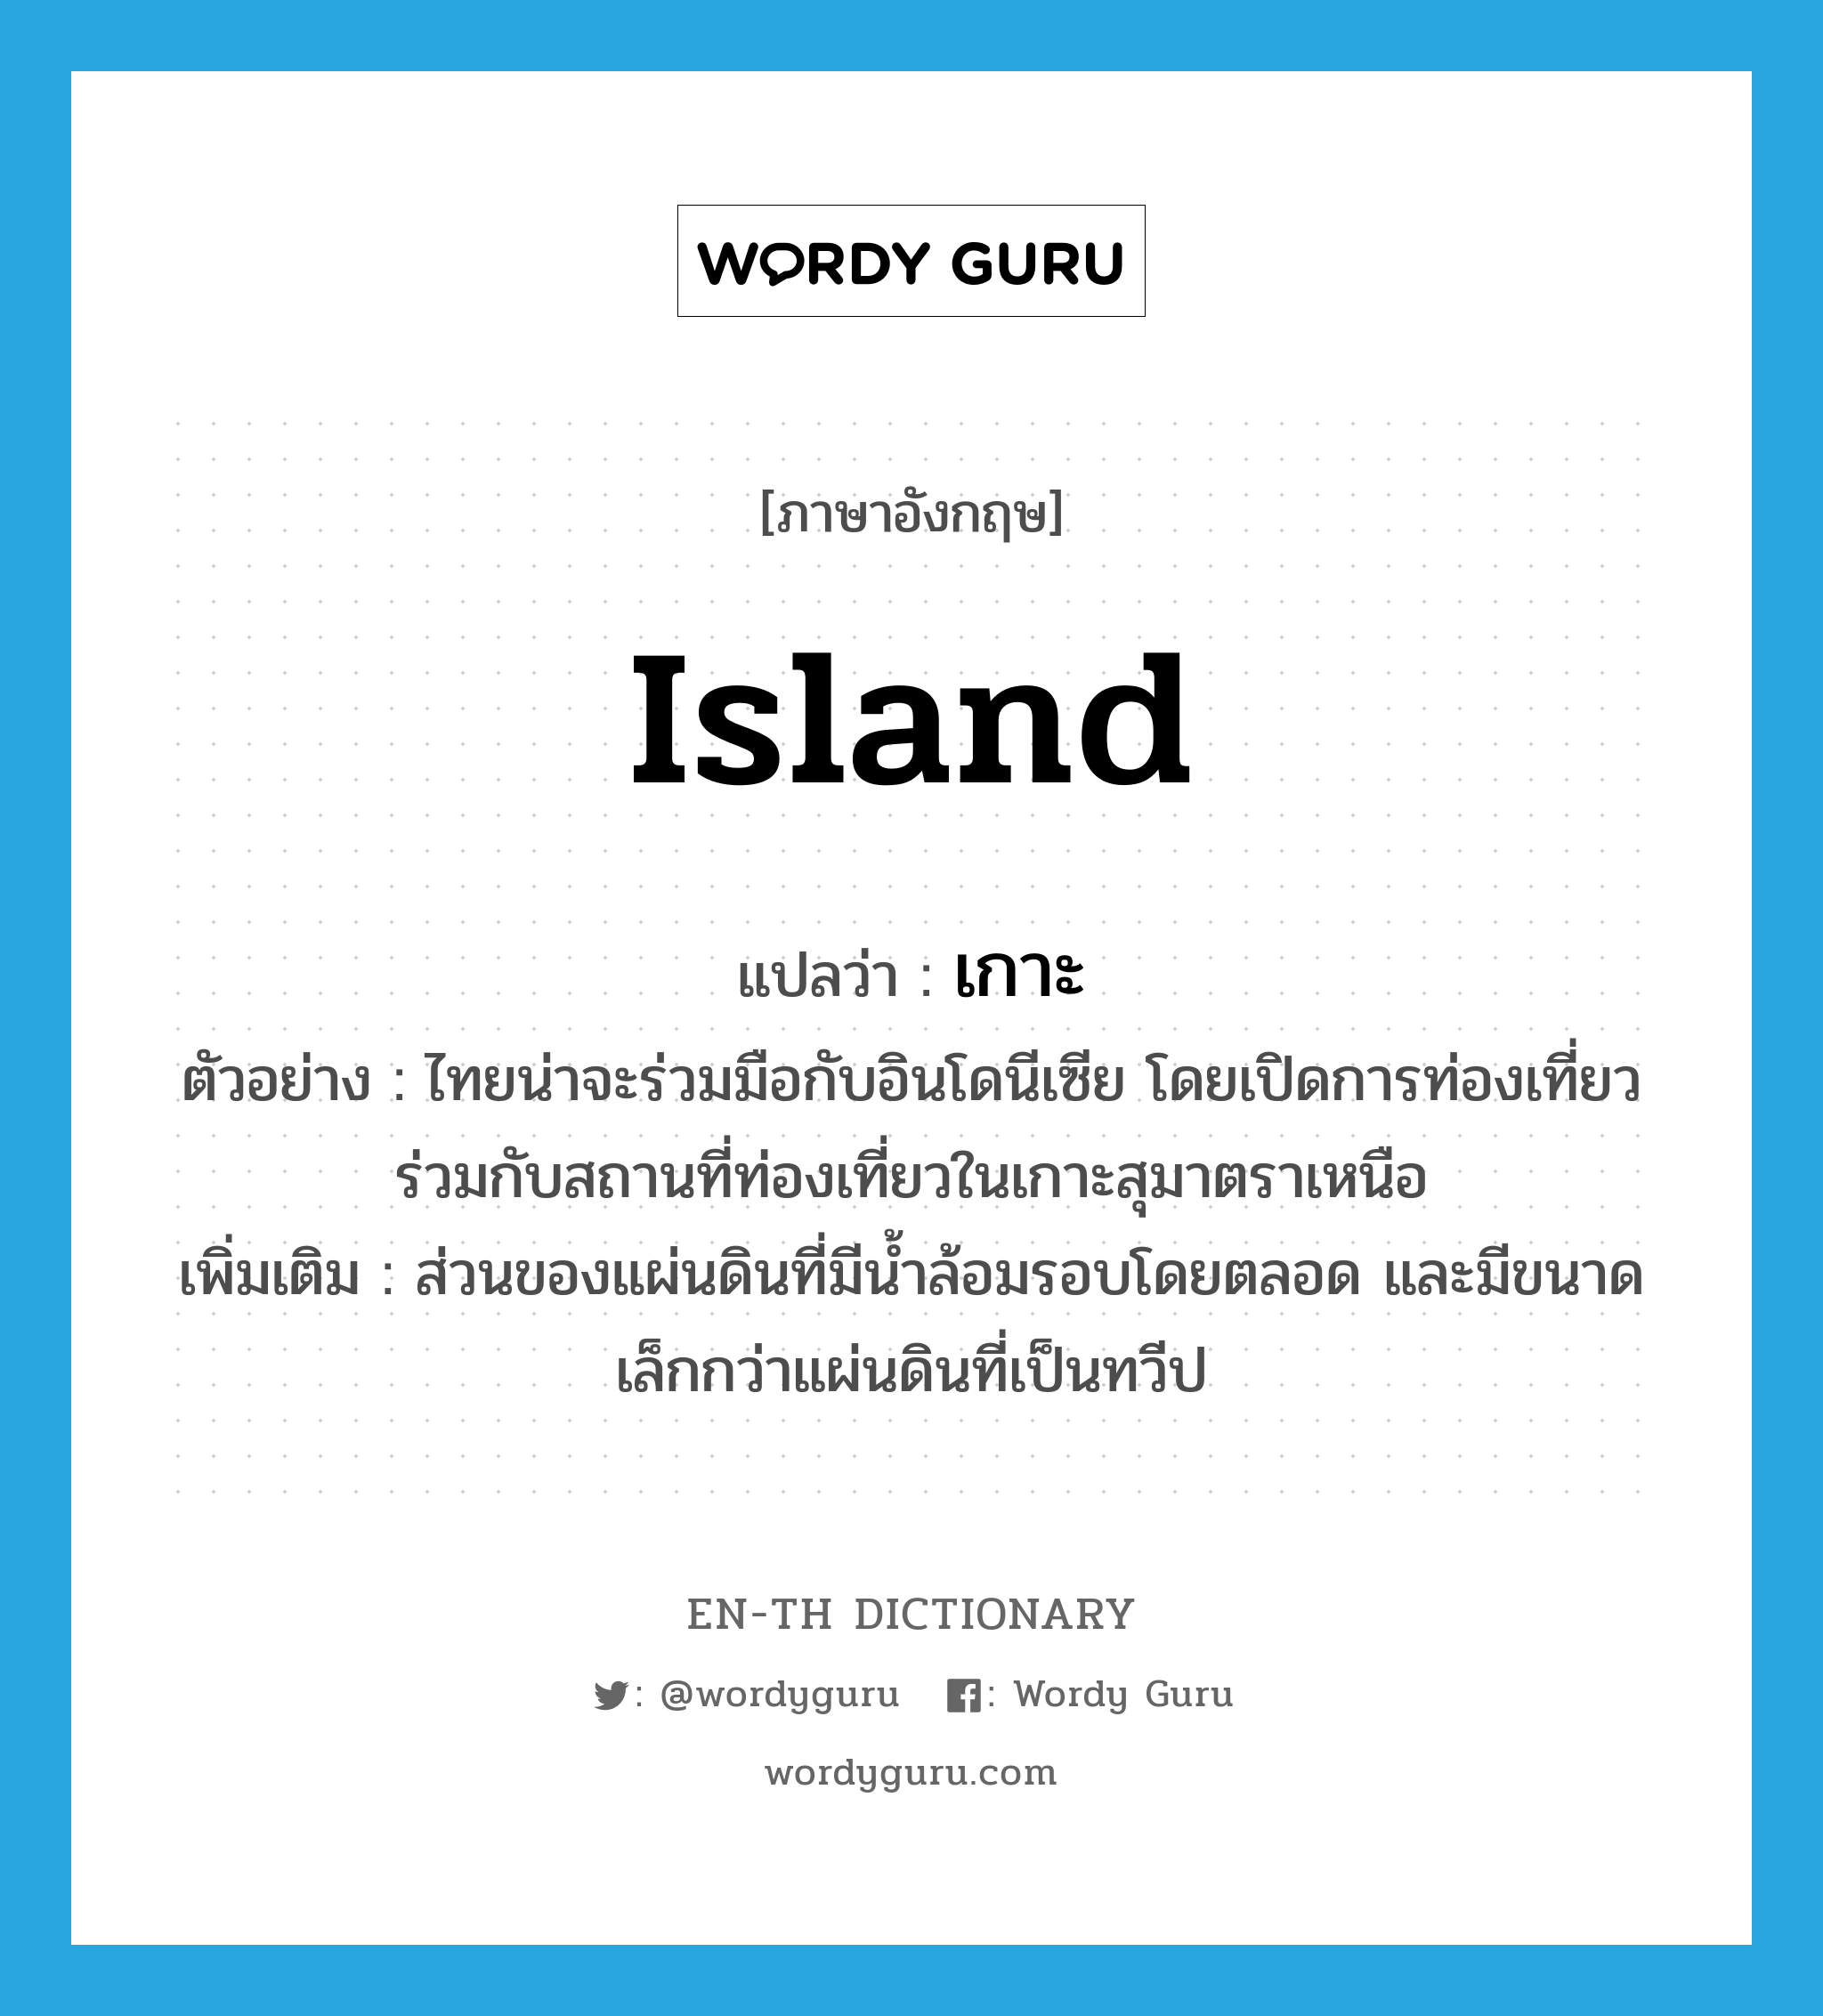 island แปลว่า?, คำศัพท์ภาษาอังกฤษ island แปลว่า เกาะ ประเภท N ตัวอย่าง ไทยน่าจะร่วมมือกับอินโดนีเซีย โดยเปิดการท่องเที่ยวร่วมกับสถานที่ท่องเที่ยวในเกาะสุมาตราเหนือ เพิ่มเติม ส่วนของแผ่นดินที่มีน้ำล้อมรอบโดยตลอด และมีขนาดเล็กกว่าแผ่นดินที่เป็นทวีป หมวด N